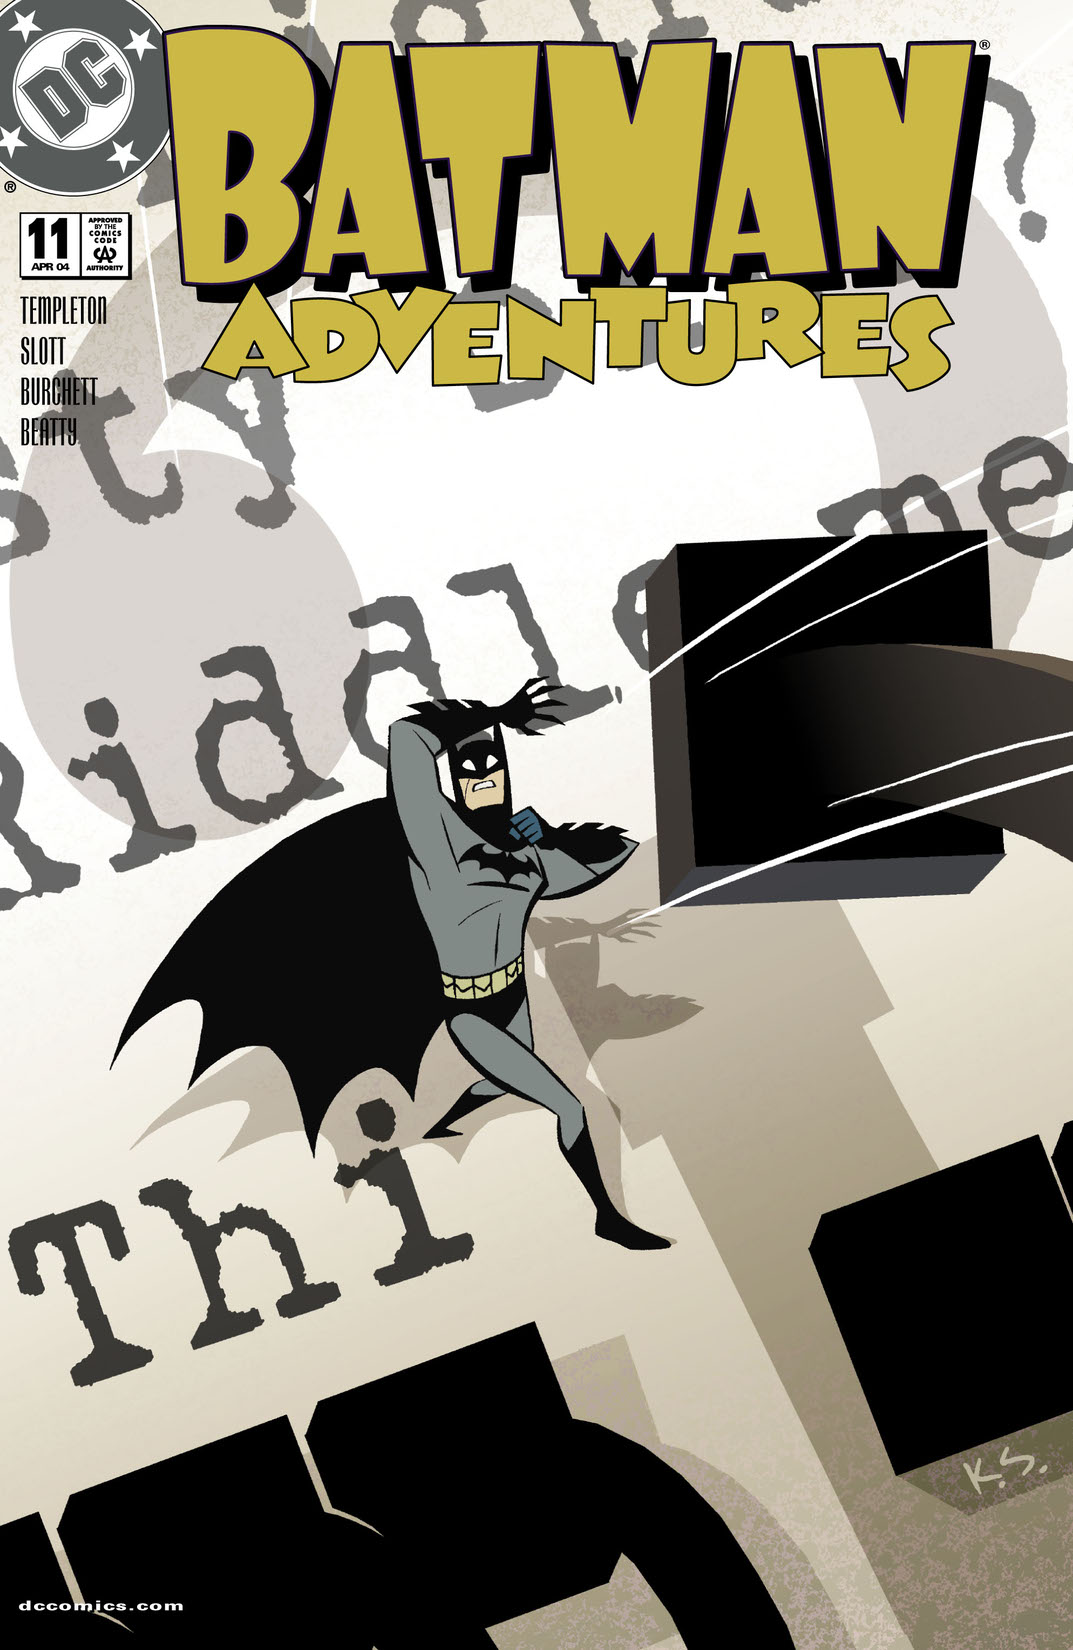 Batman Adventures #11 preview images